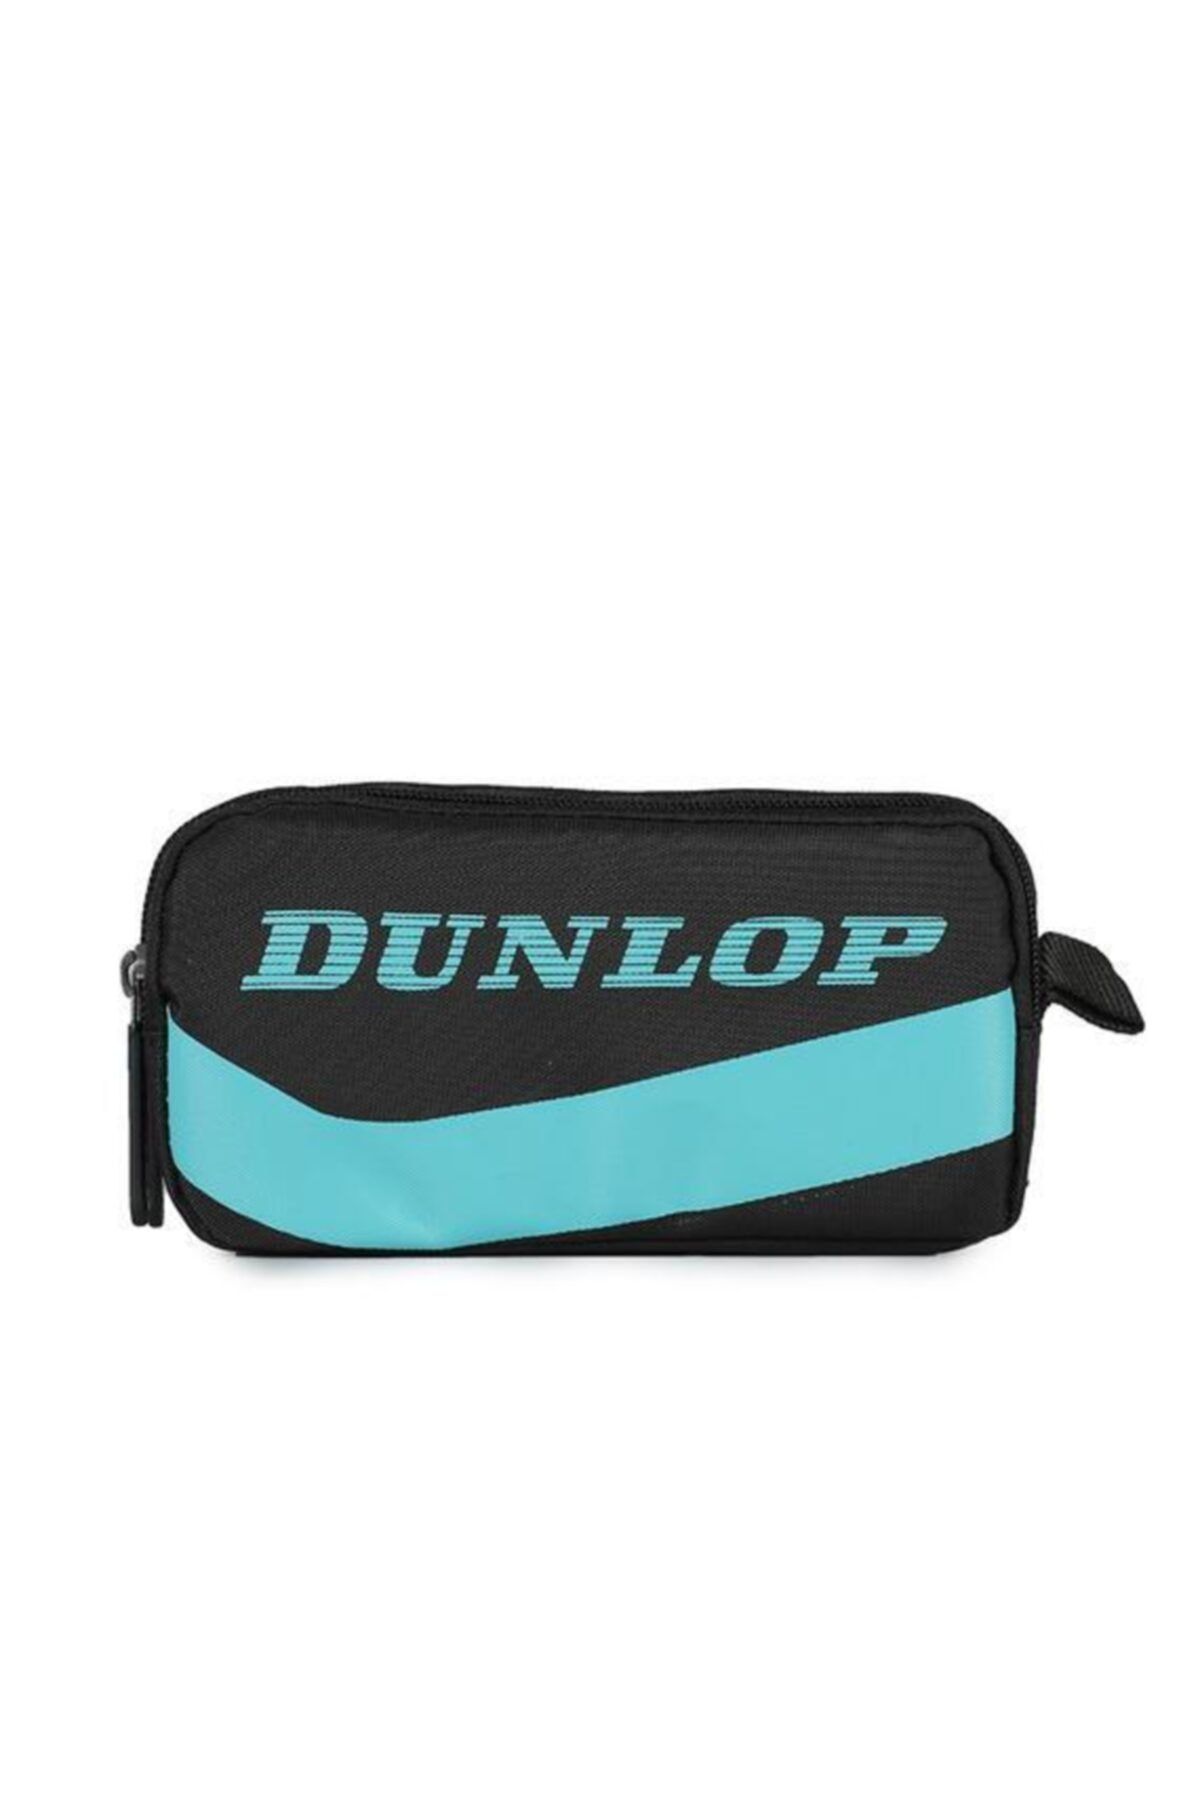 Dunlop Siyah Kalem Çantası